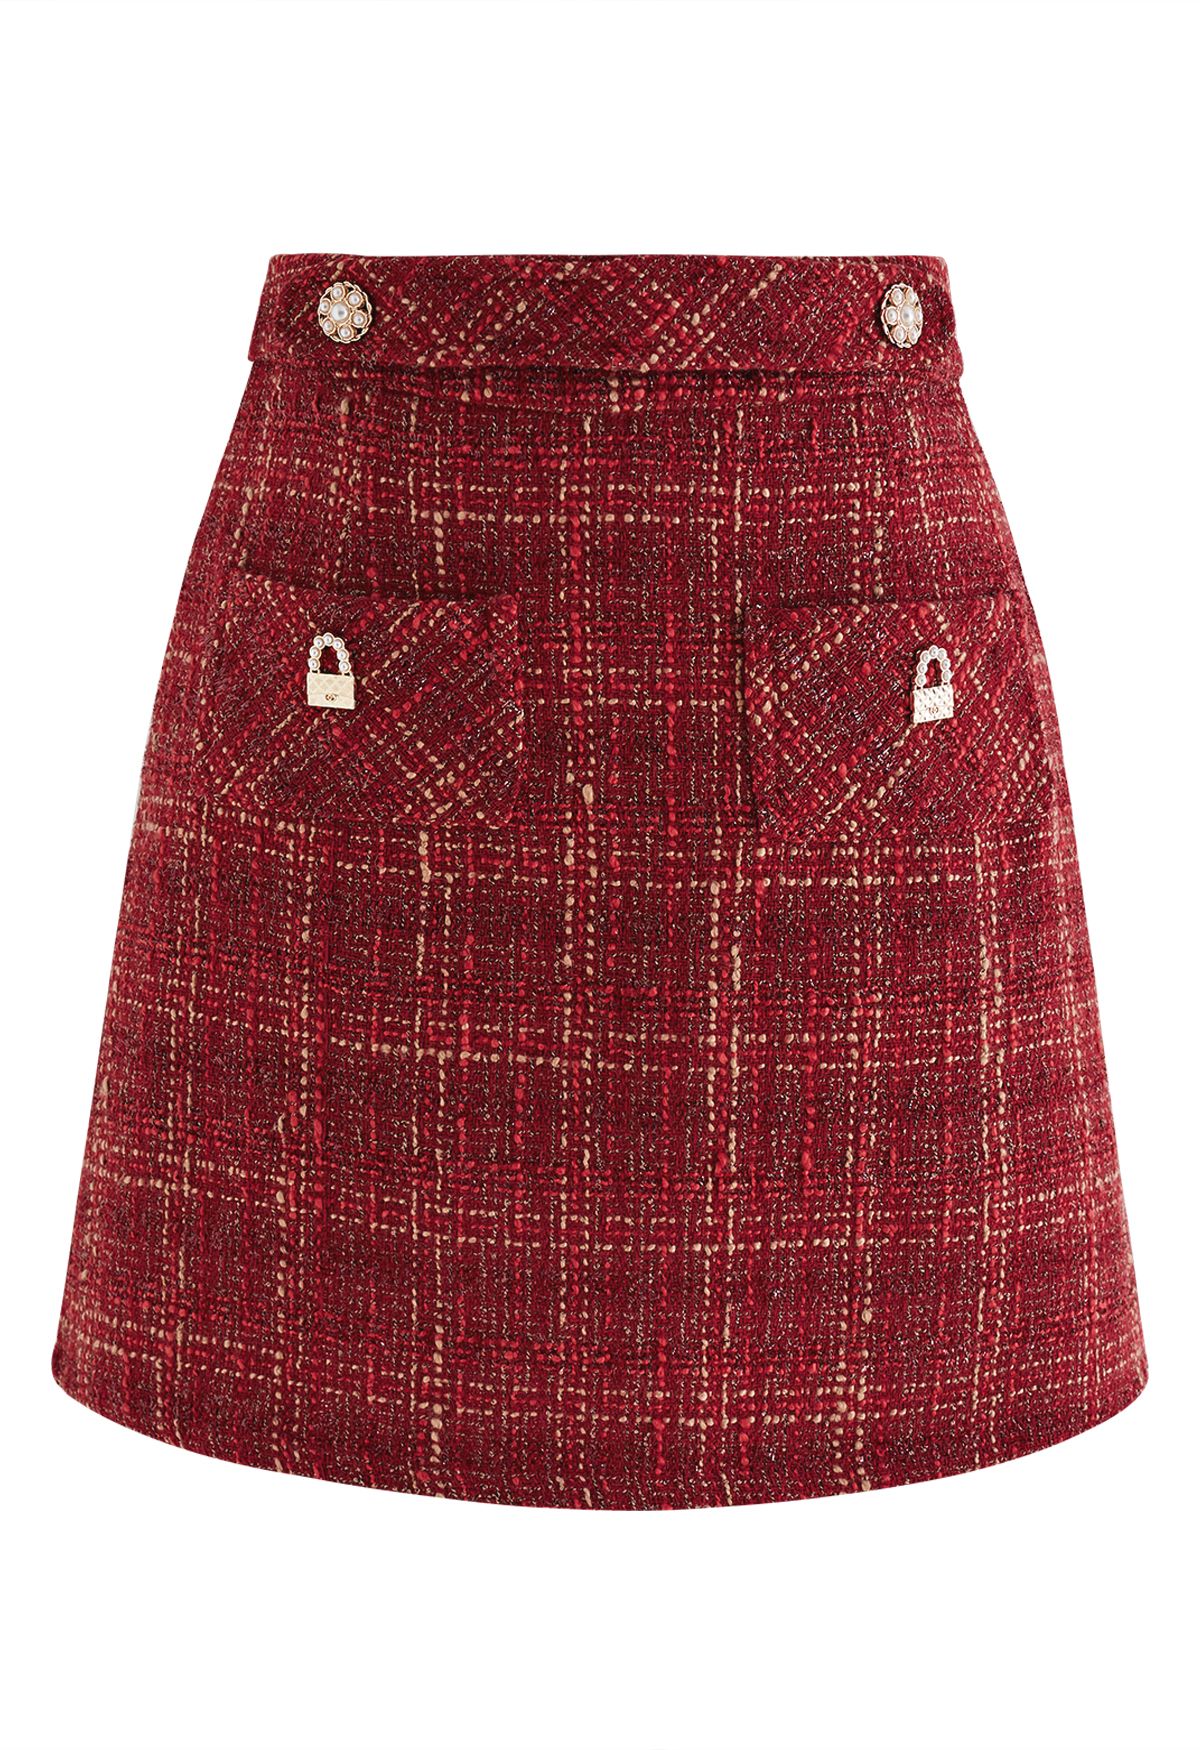 Metallic Thread Plaid Tweed Mini Skirt in Red - Retro, Indie and Unique ...